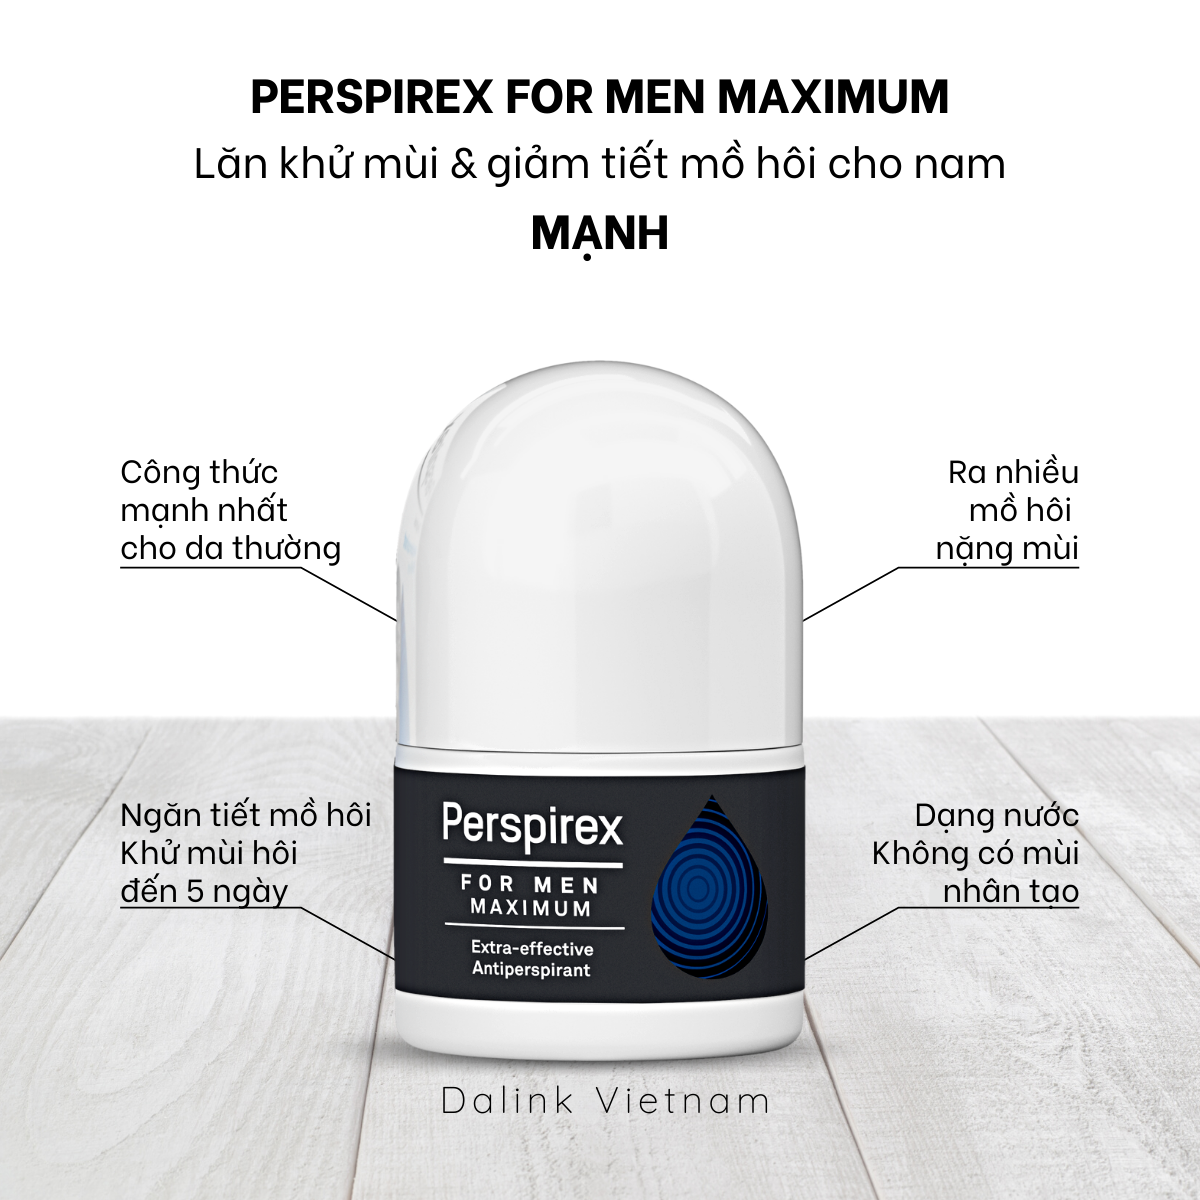 Perspirex for Men Maximum - Lăn khử mùi và ngăn tiết mồ hôi loại mạnh